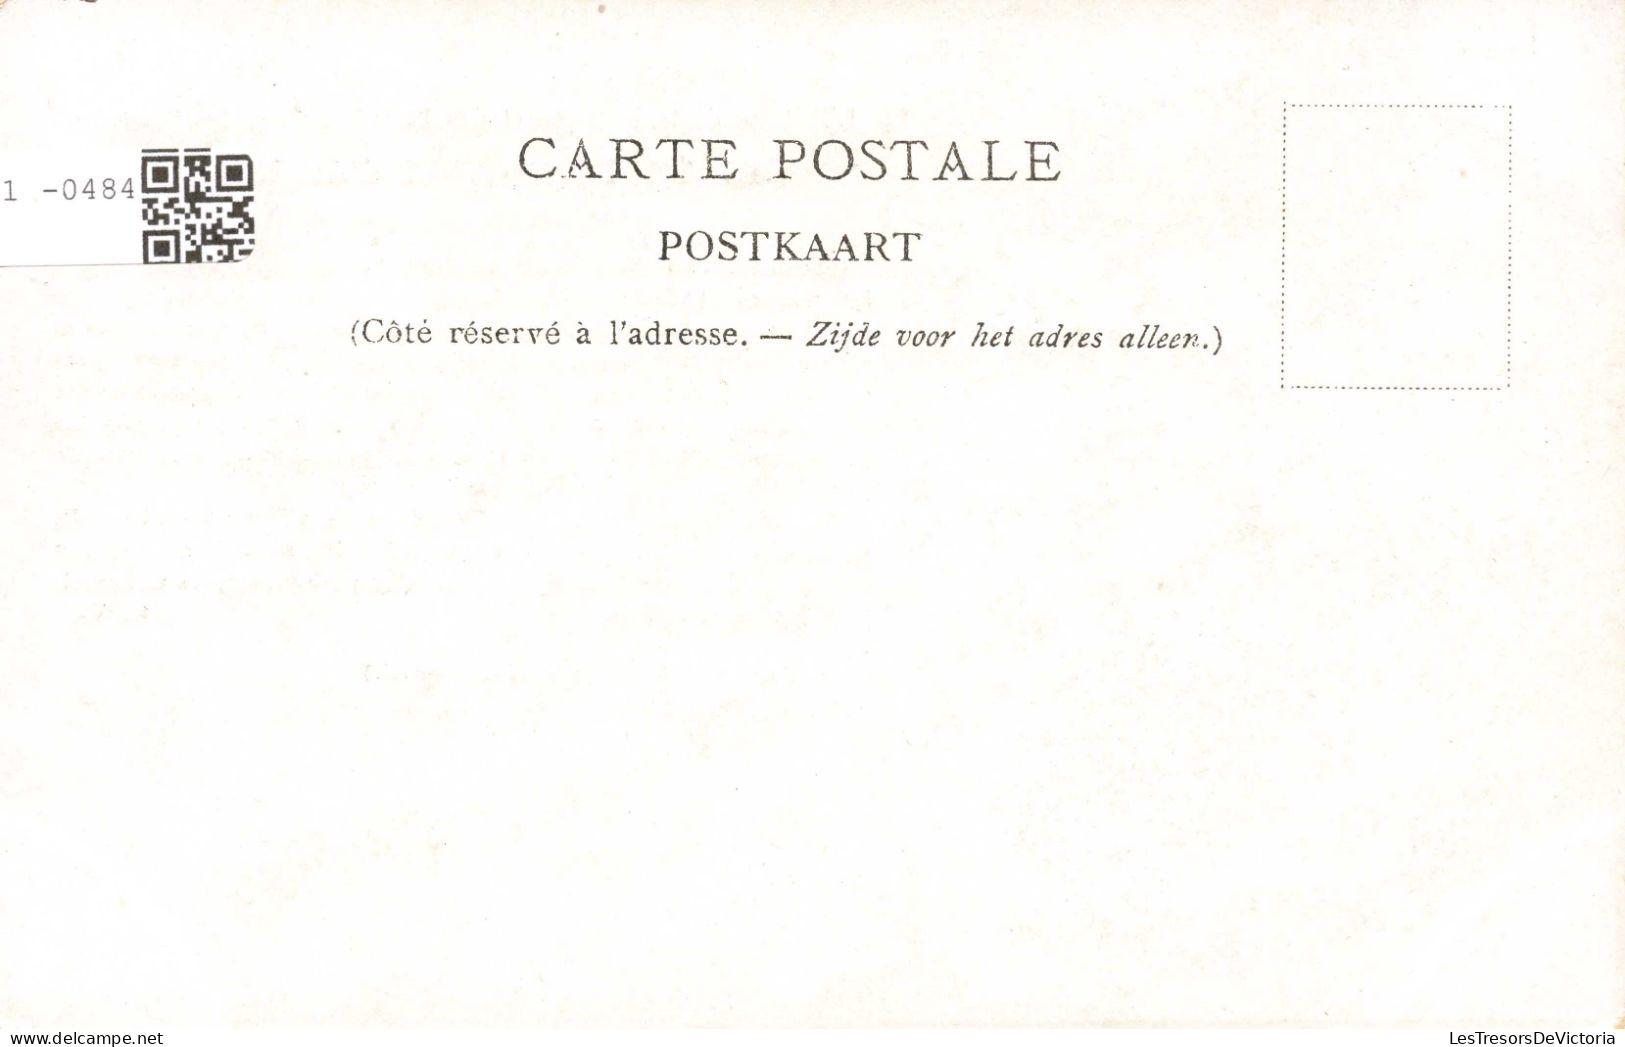 CELEBRITES - Personnages Historiques - Charles 1er - Roi D'Angleterre - Carte Postale Ancienne - Politische Und Militärische Männer